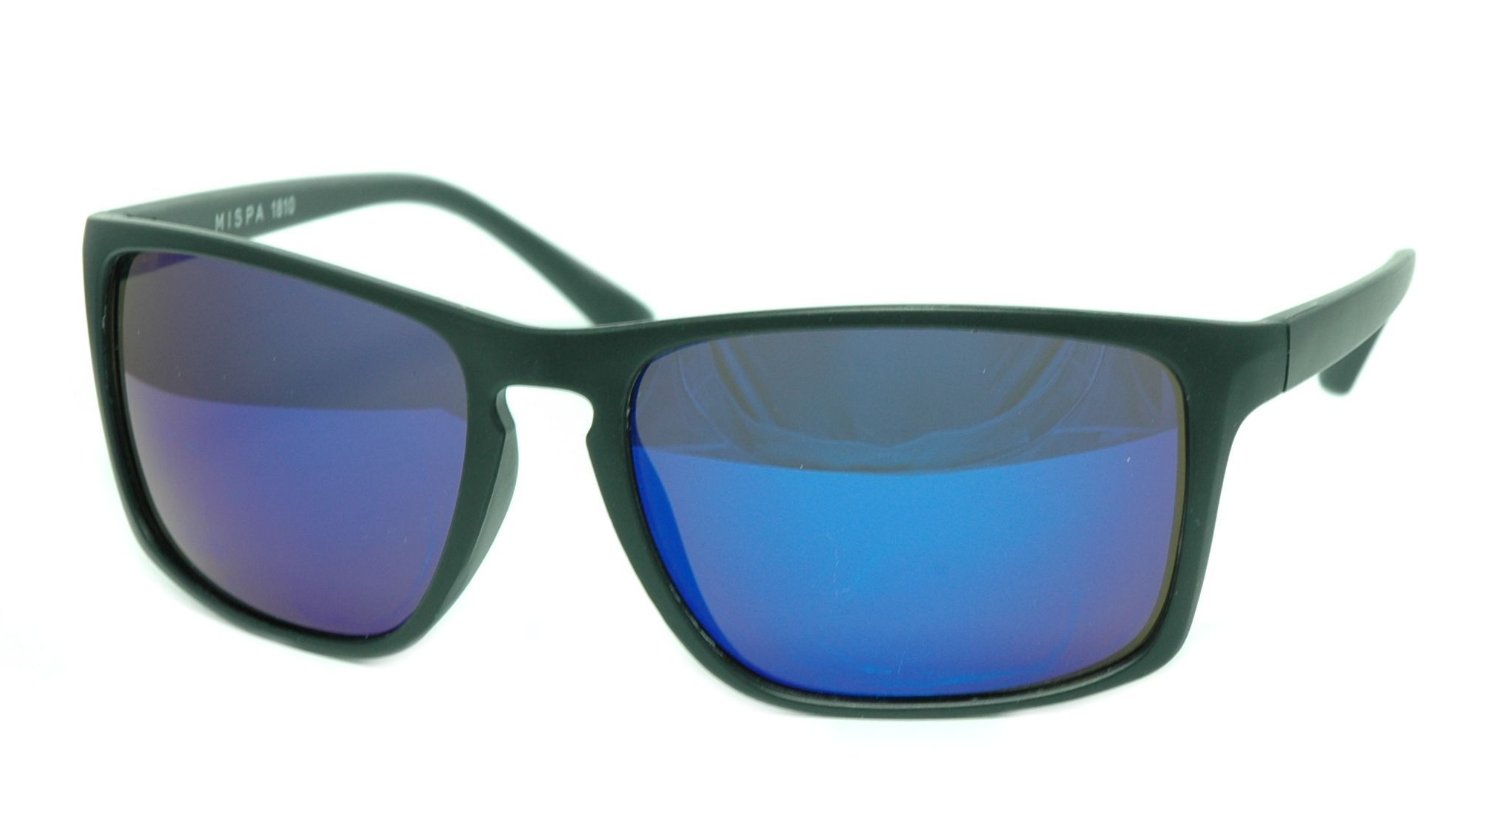 Image of Mispa Sunglasses (#121810) Black